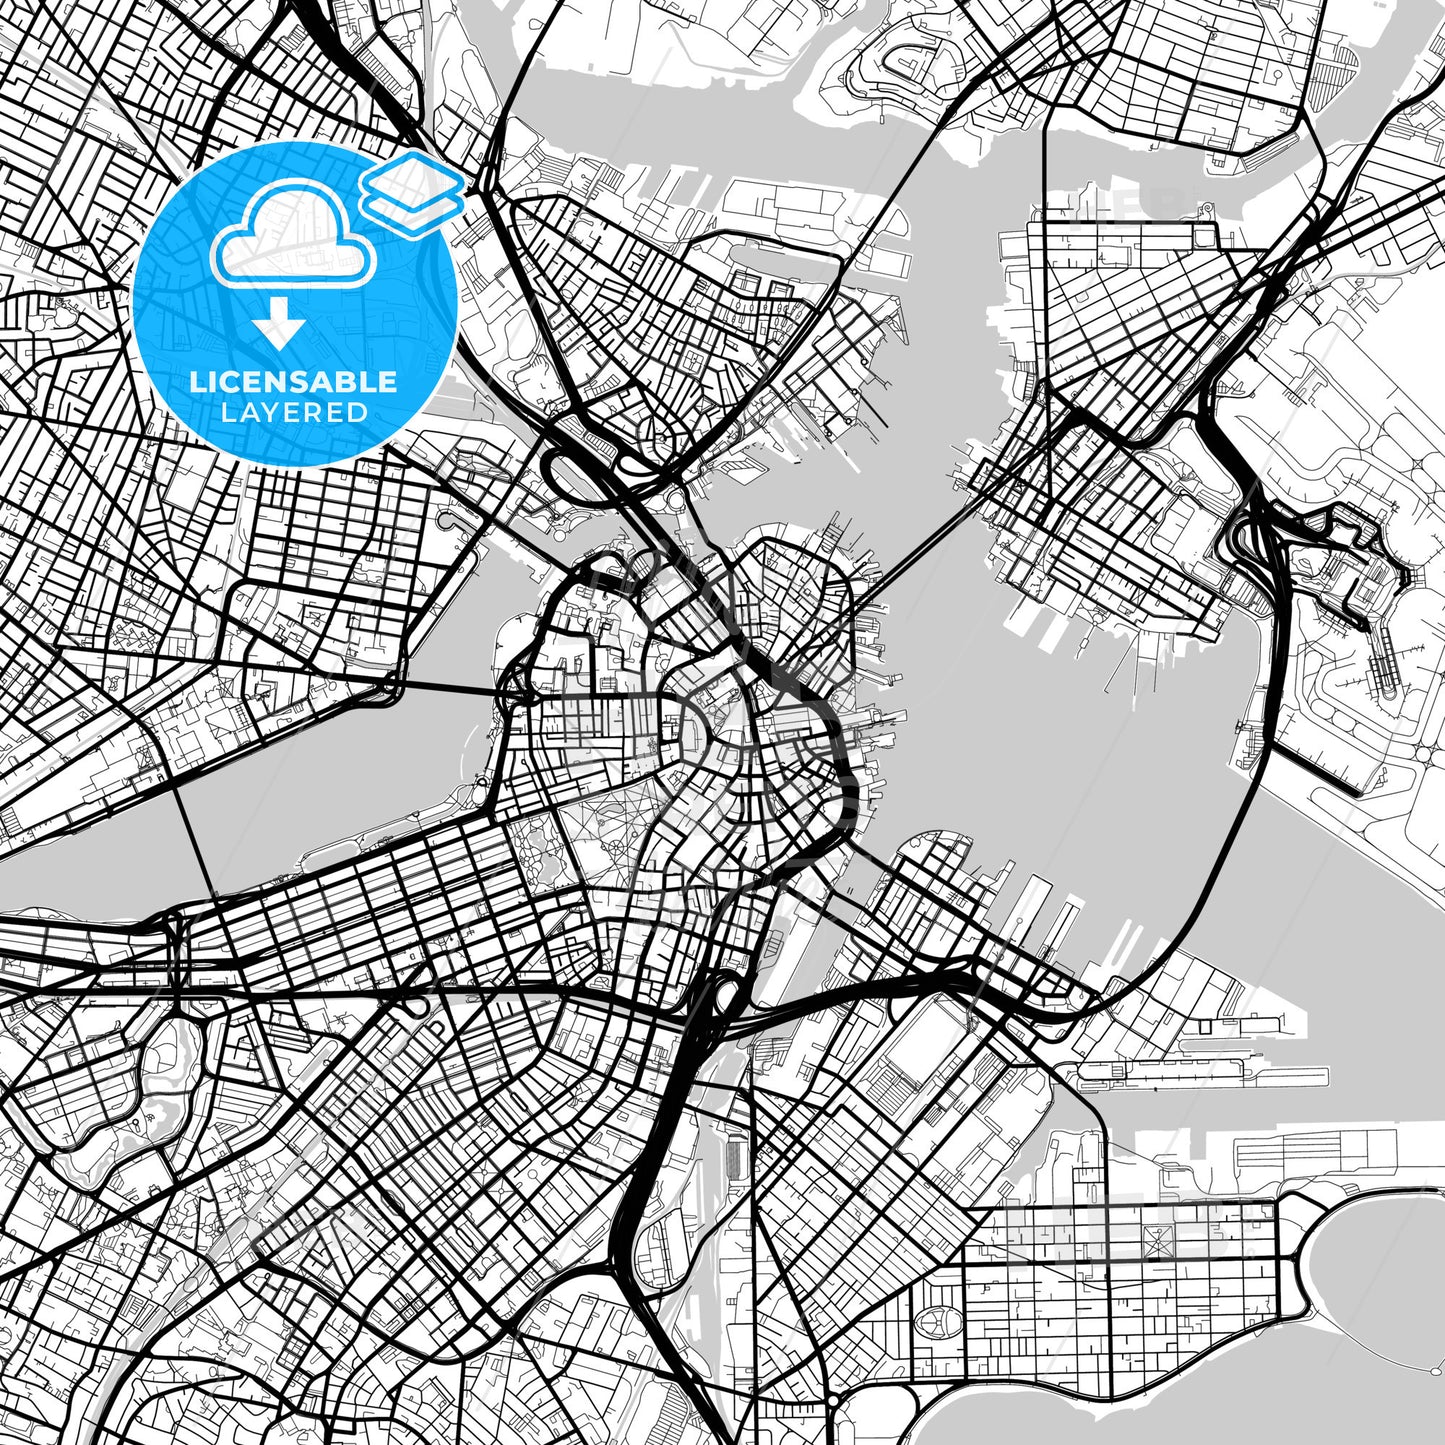 Layered PDF map of Boston, Massachusetts, United States